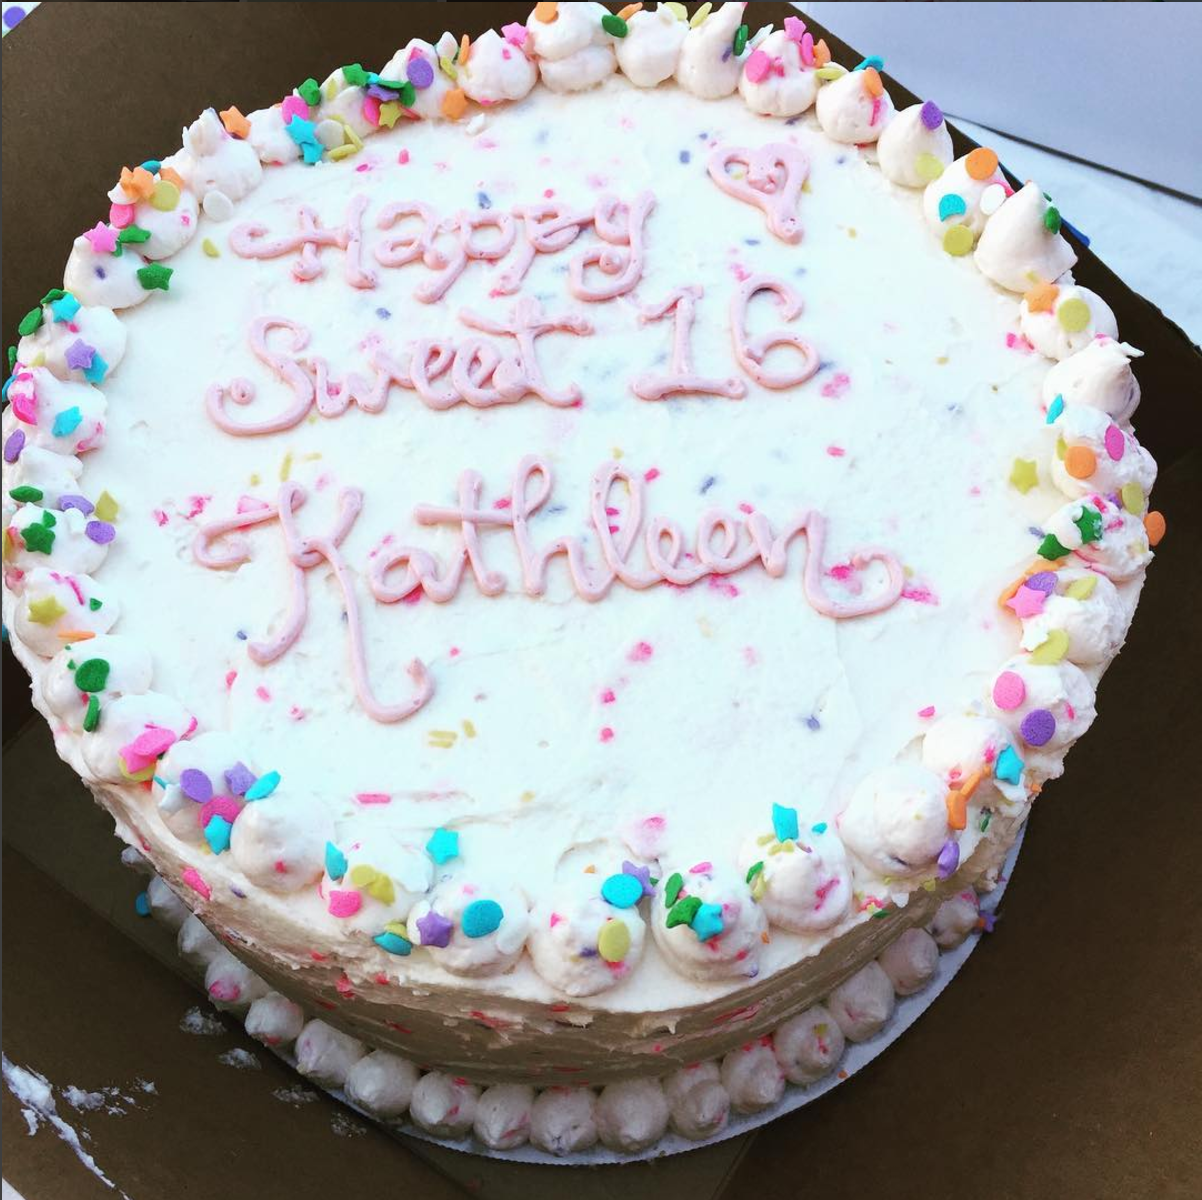 Happy Sweet 16 Cake